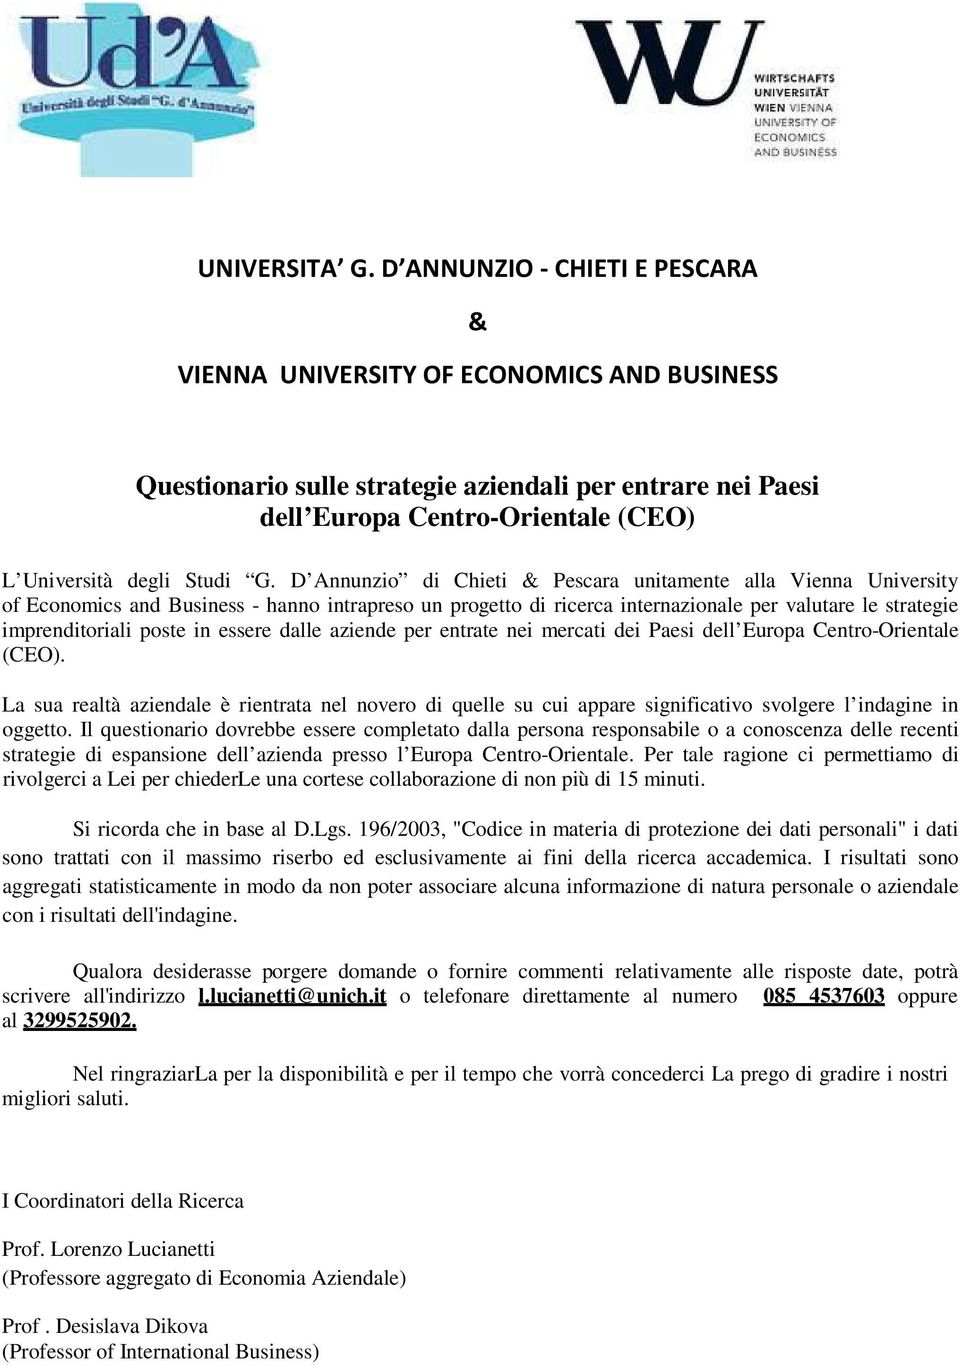 D Annunzio di Chieti & Pescara unitamente alla Vienna University of Economics and Business - hanno intrapreso un progetto di ricerca internazionale per valutare le strategie imprenditoriali poste in